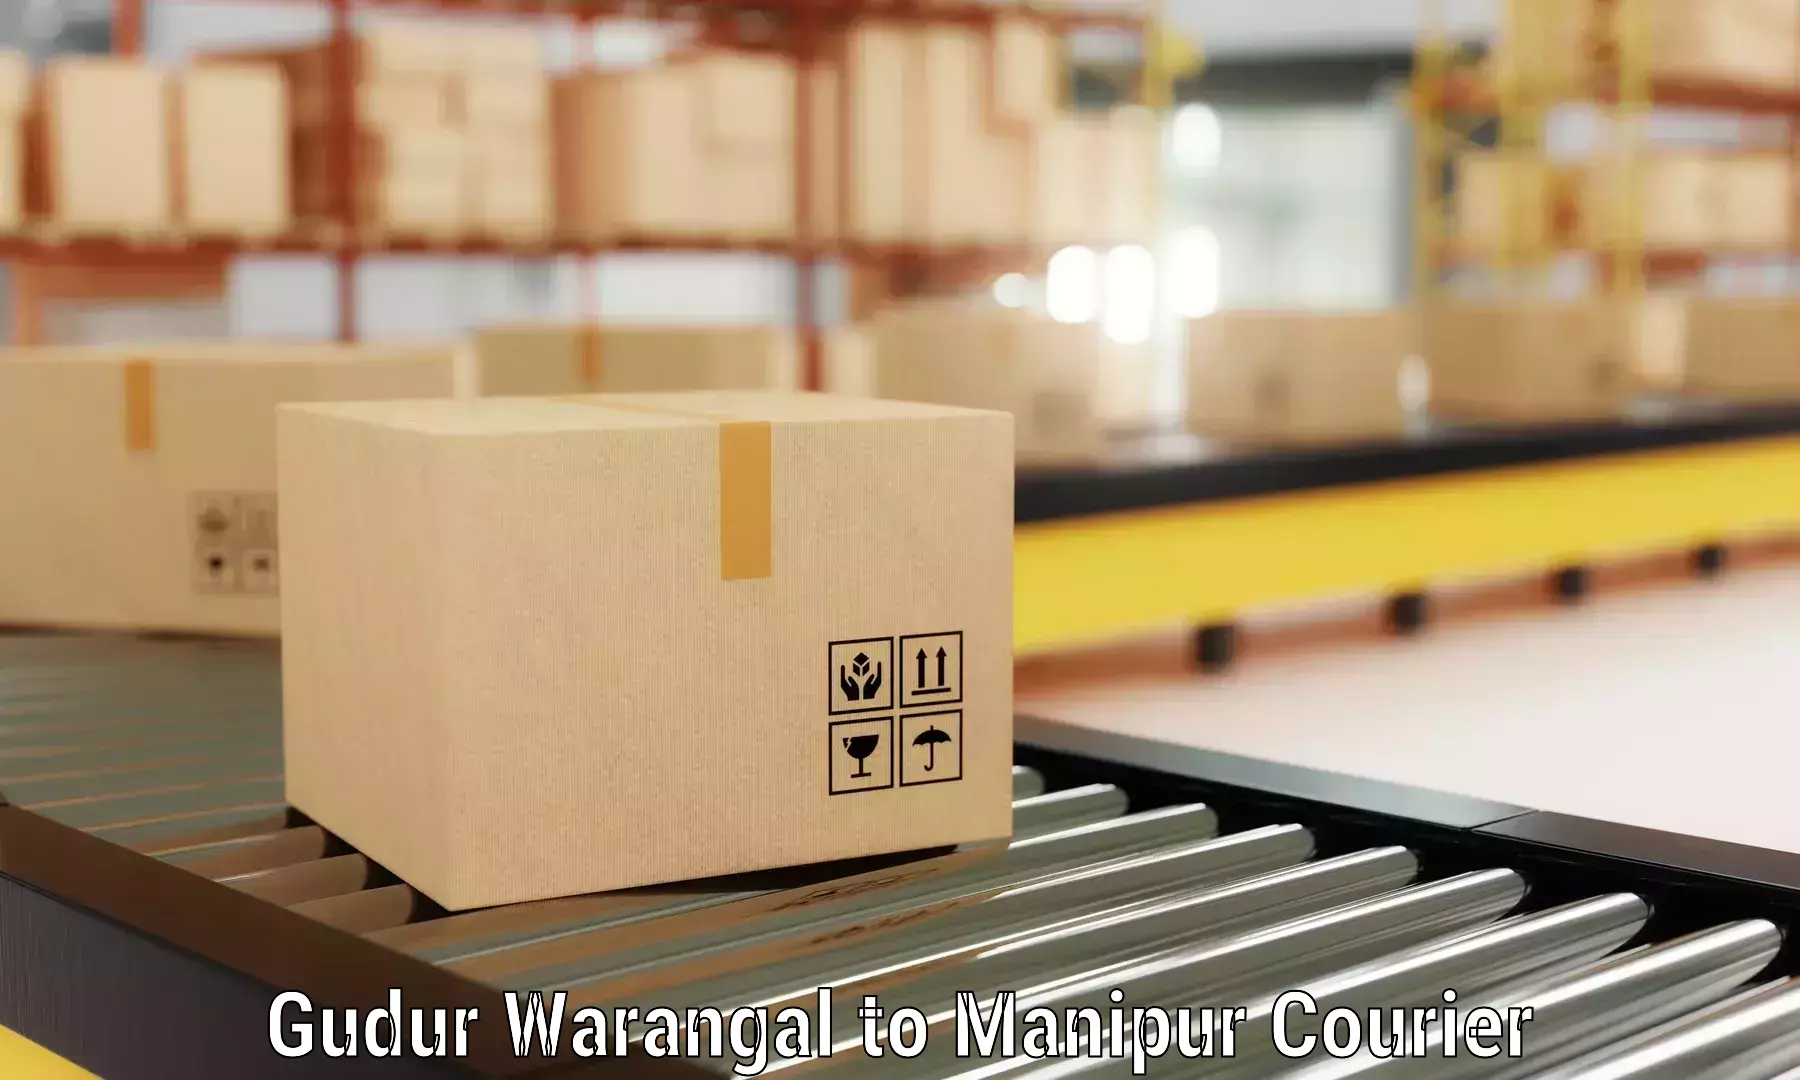 Quality moving company Gudur Warangal to Ukhrul